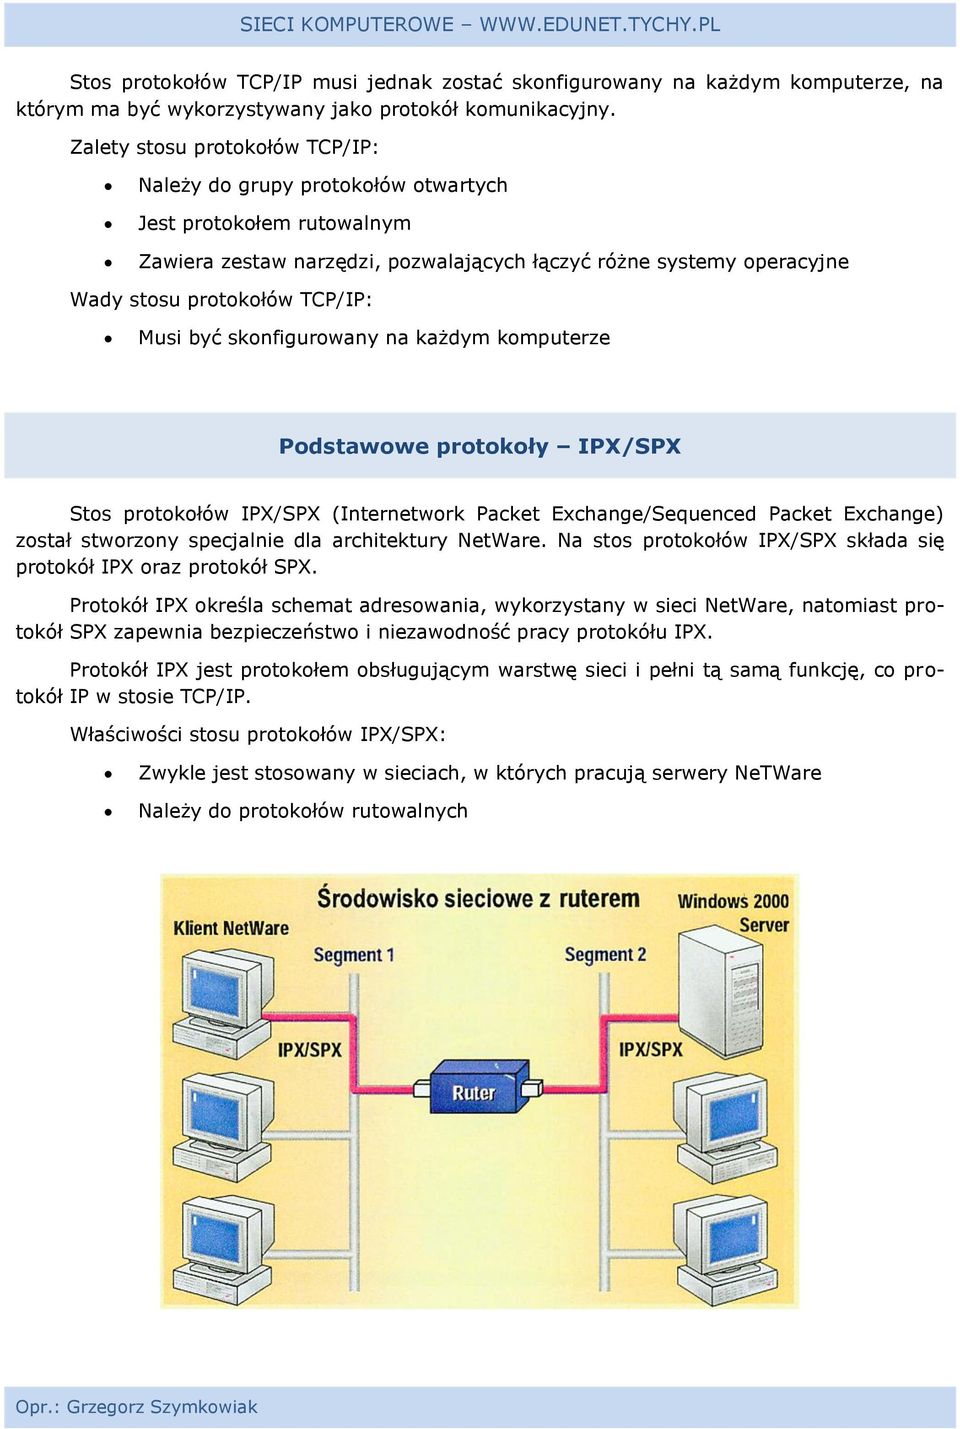 Musi być skonfigurowany na każdym komputerze Podstawowe protokoły IPX/SPX Stos protokołów IPX/SPX (Internetwork Packet Exchange/Sequenced Packet Exchange) został stworzony specjalnie dla architektury